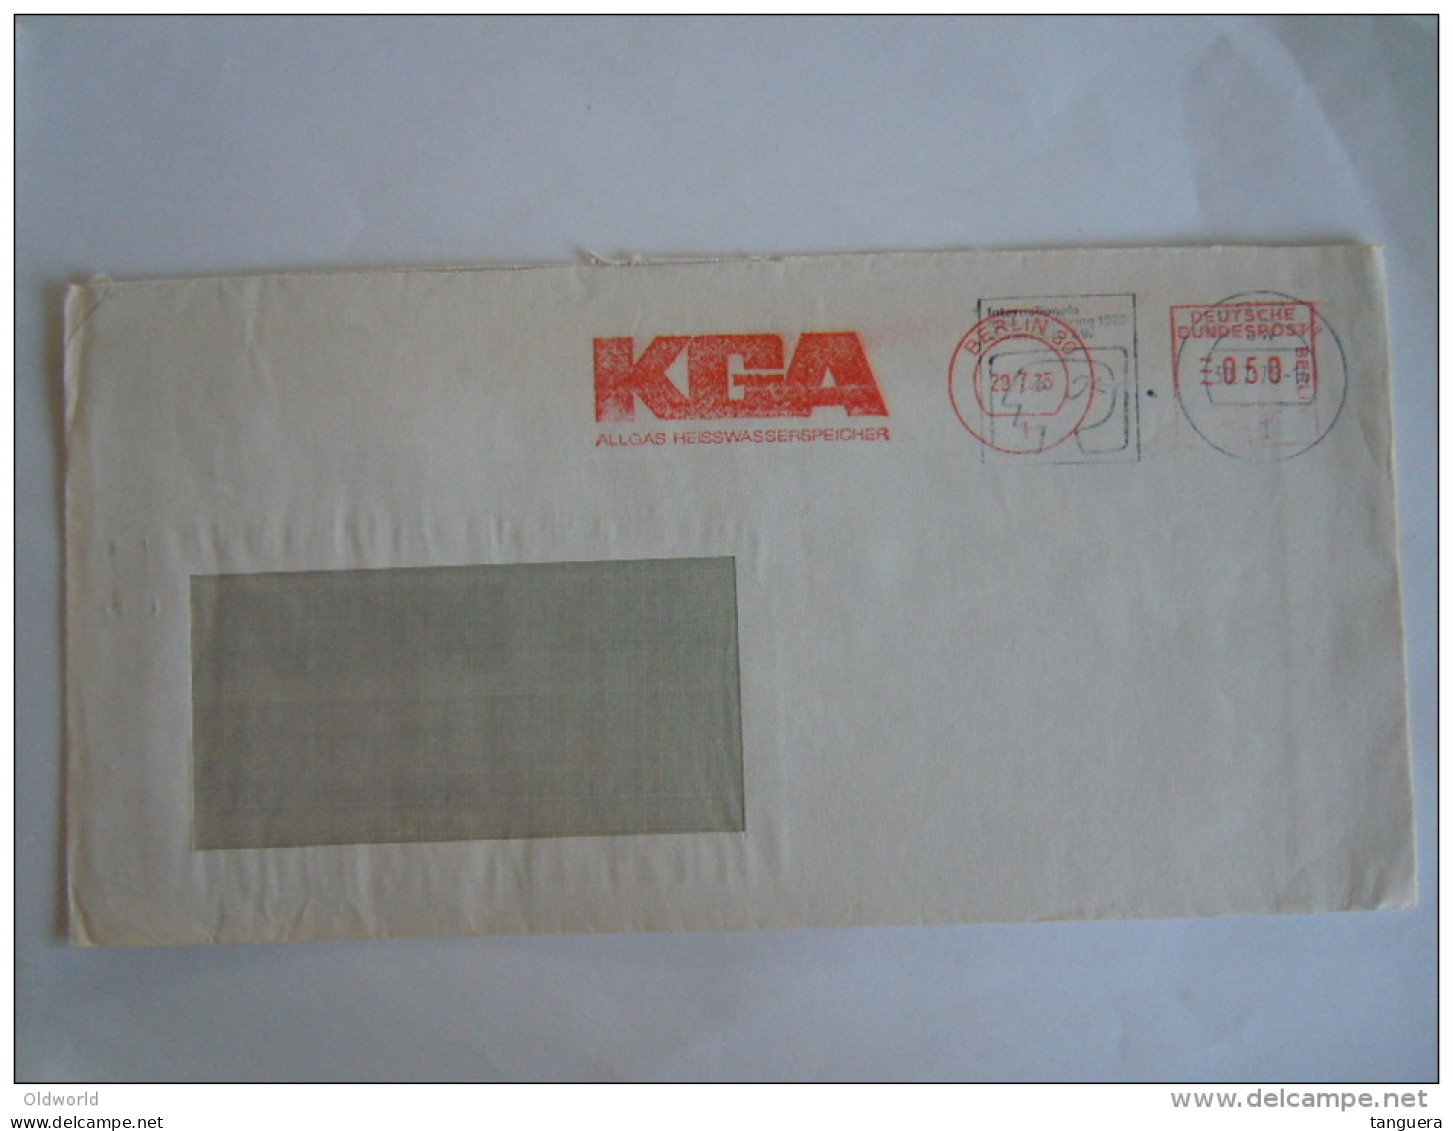 Germany Allemagne Brief Lettre Letter EMA 1975 KGA Allgas Heisswasserspeicher Rare 2 Cachets Superposés Berlin - Maschinenstempel (EMA)